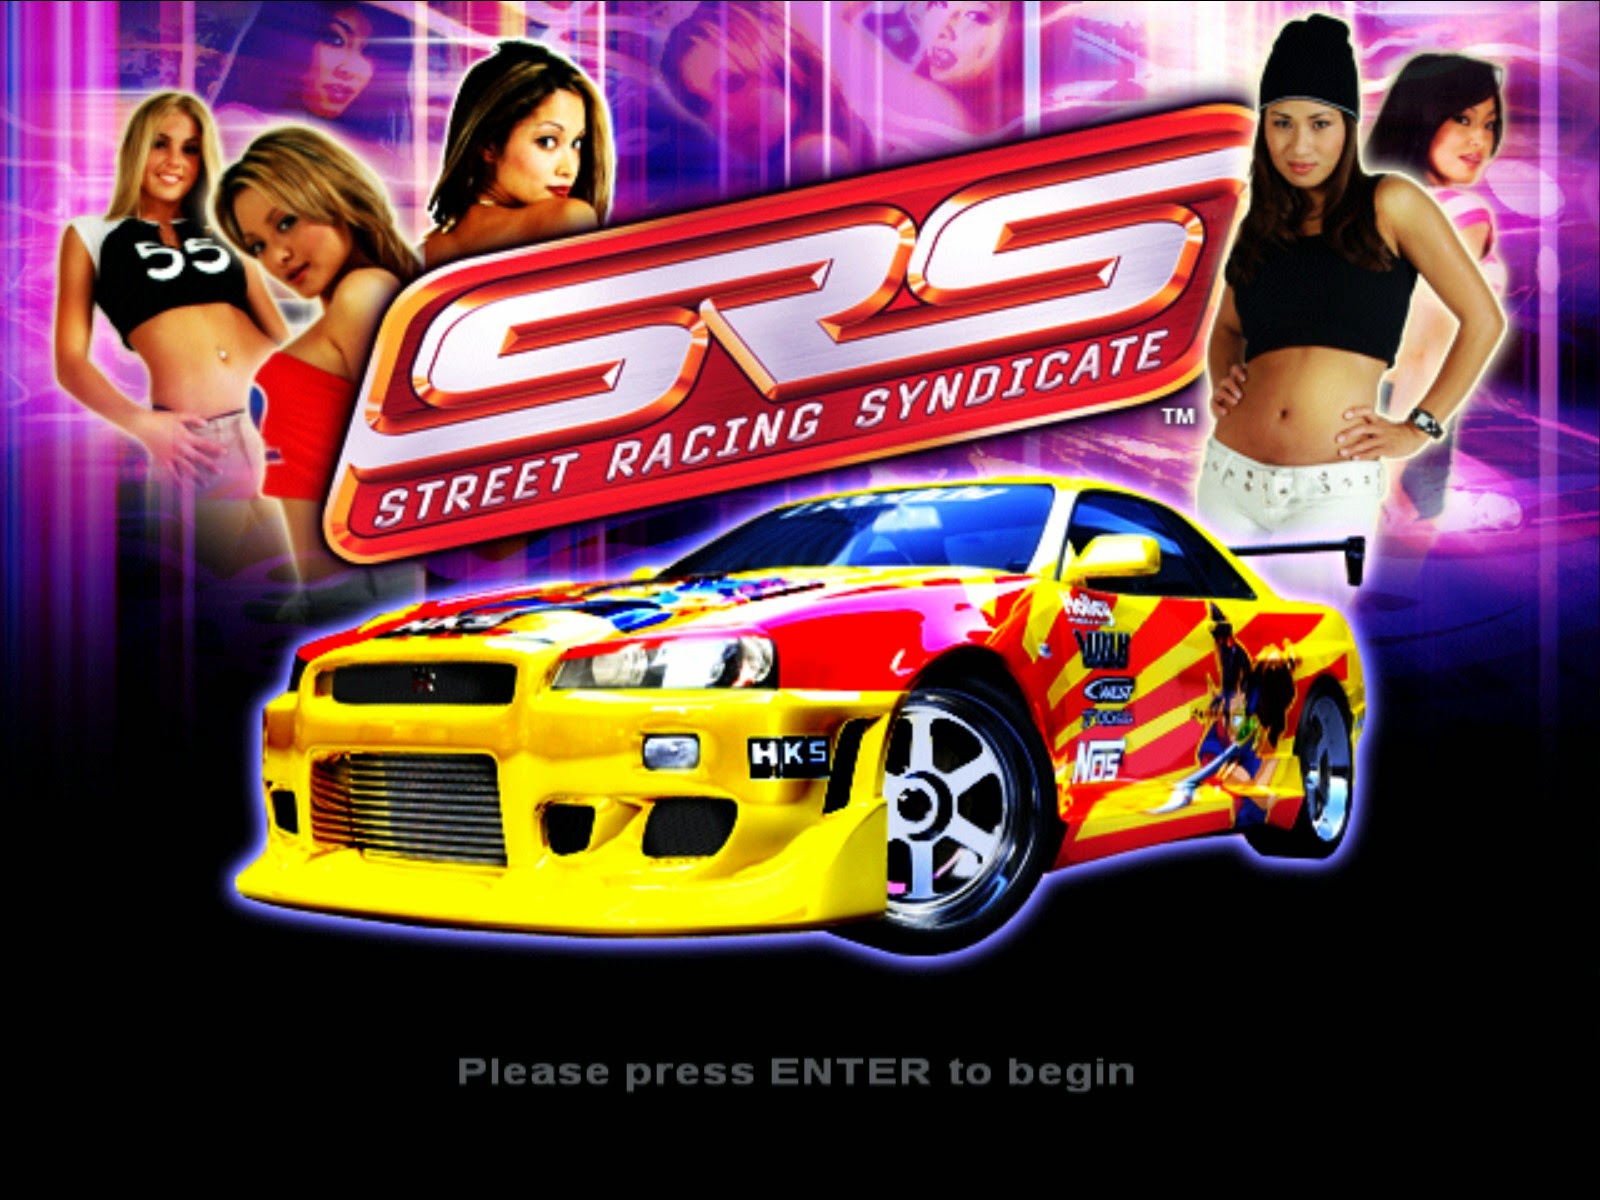 Street Racing Syndicate HD wallpapers, Desktop wallpaper - most viewed